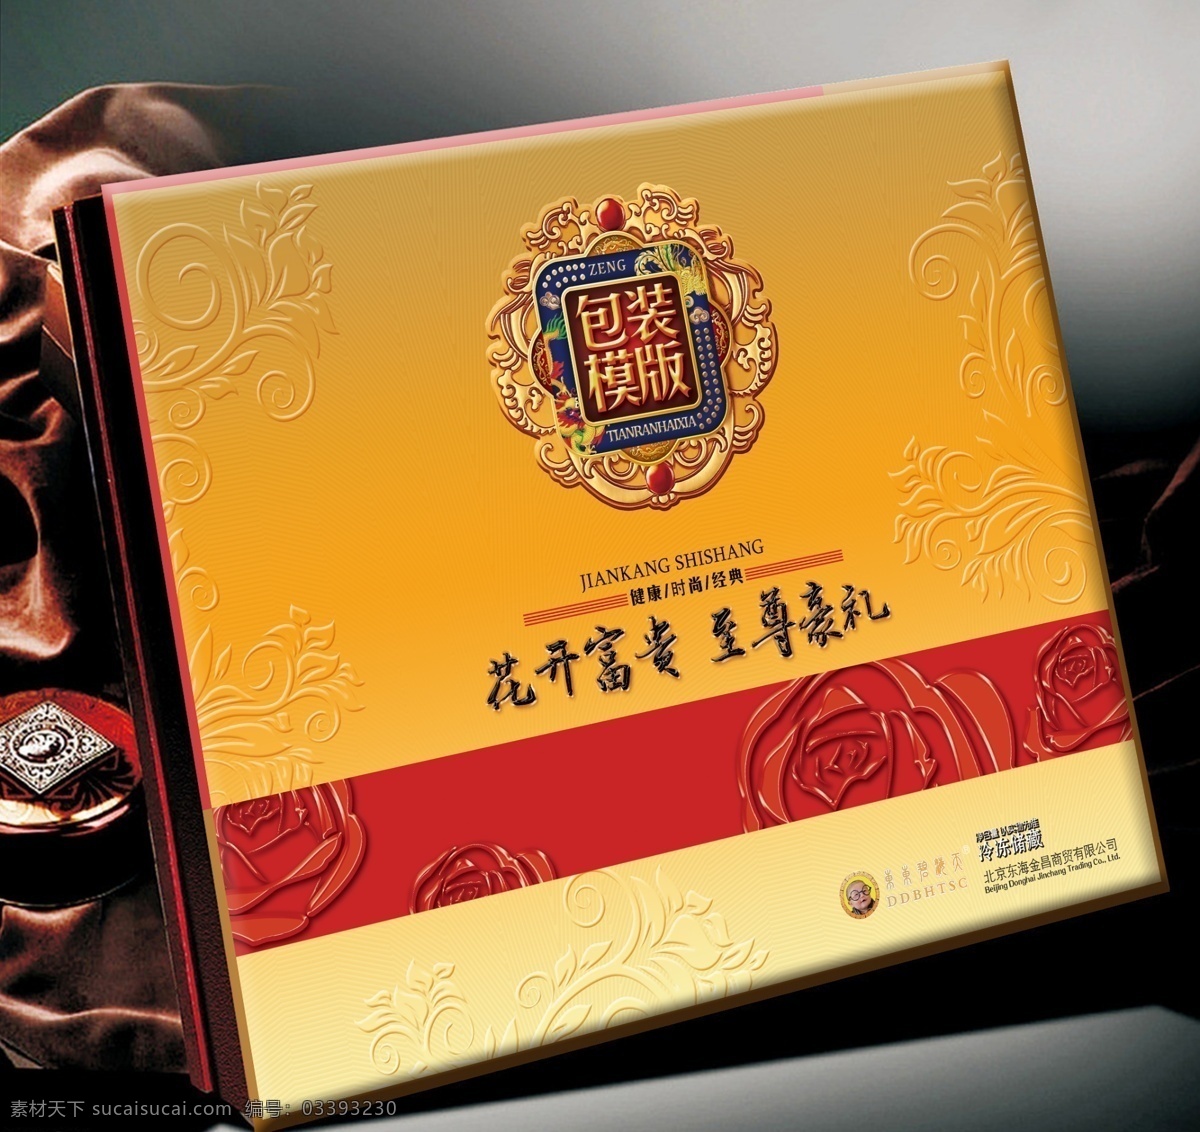 中国 至尊 豪 礼 月饼 礼品 包装设计 至尊豪礼 橙色